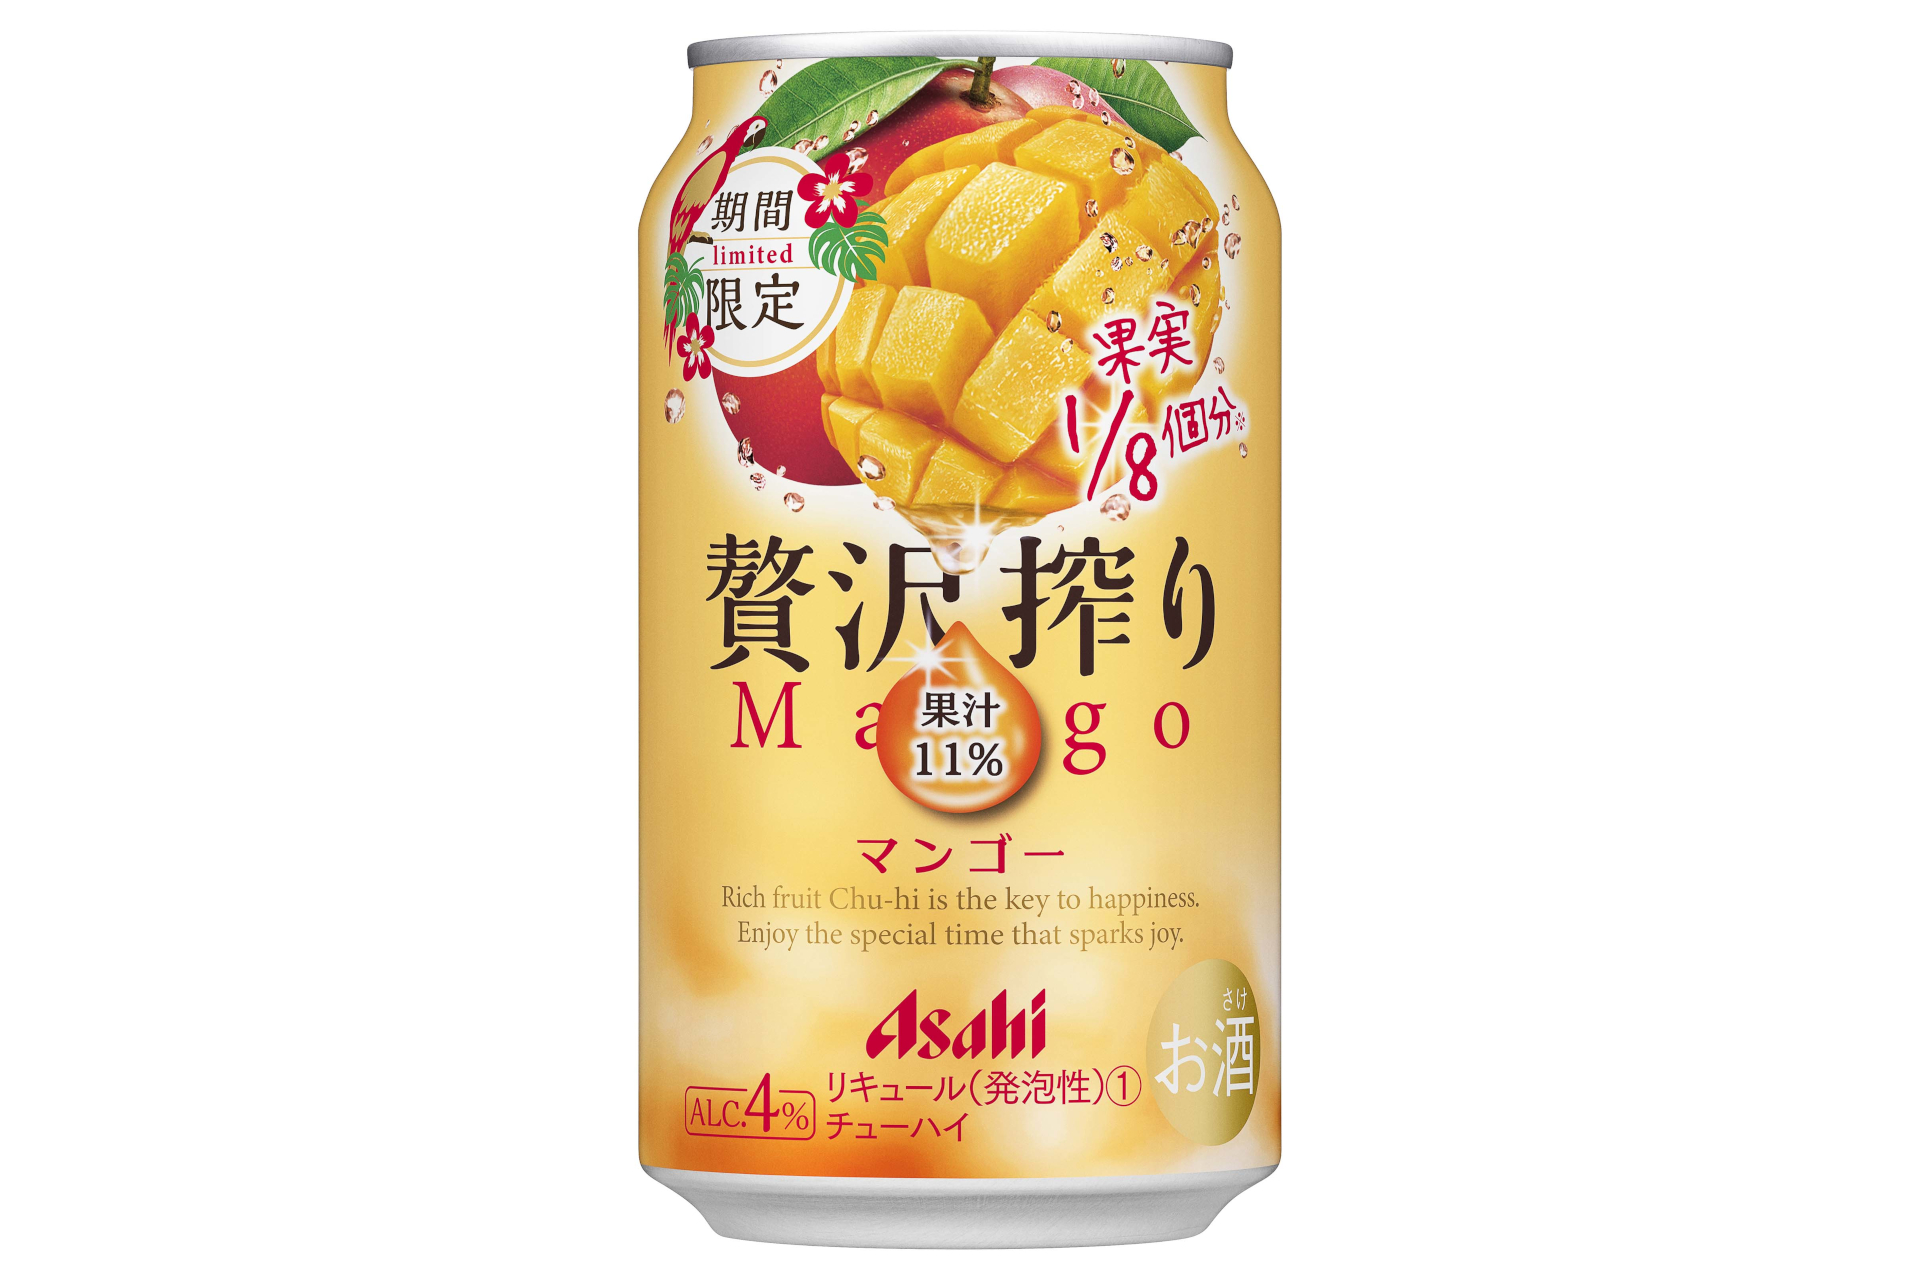 「アサヒ 贅沢搾り期間限定マンゴー」発売。マンゴー果汁11